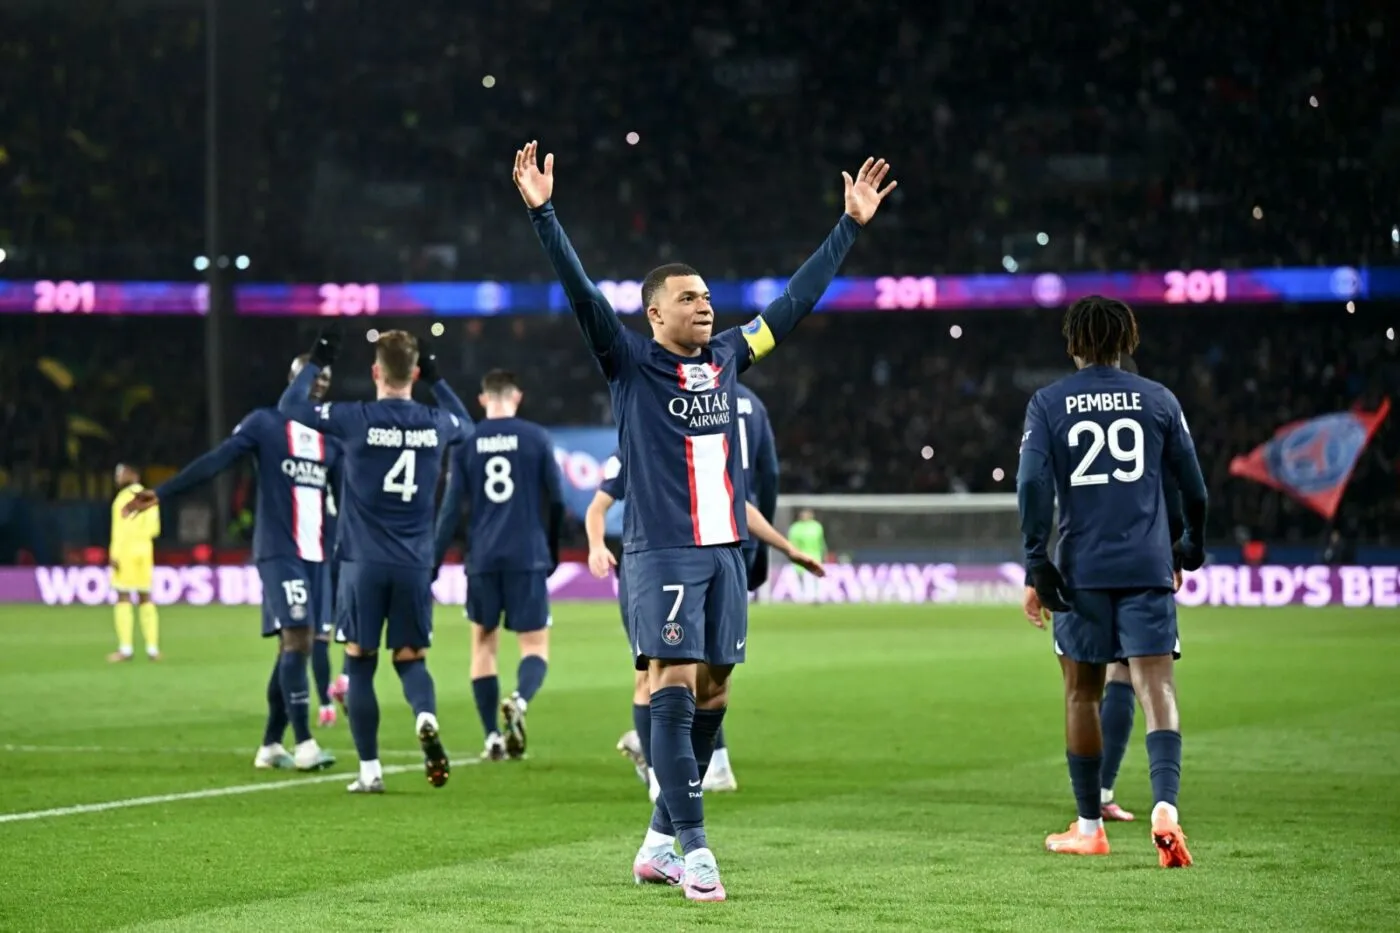 Paris sans pitié avec Revel - Coupe de France - 32es - Revel-PSG (0-9) - SO  FOOT.com